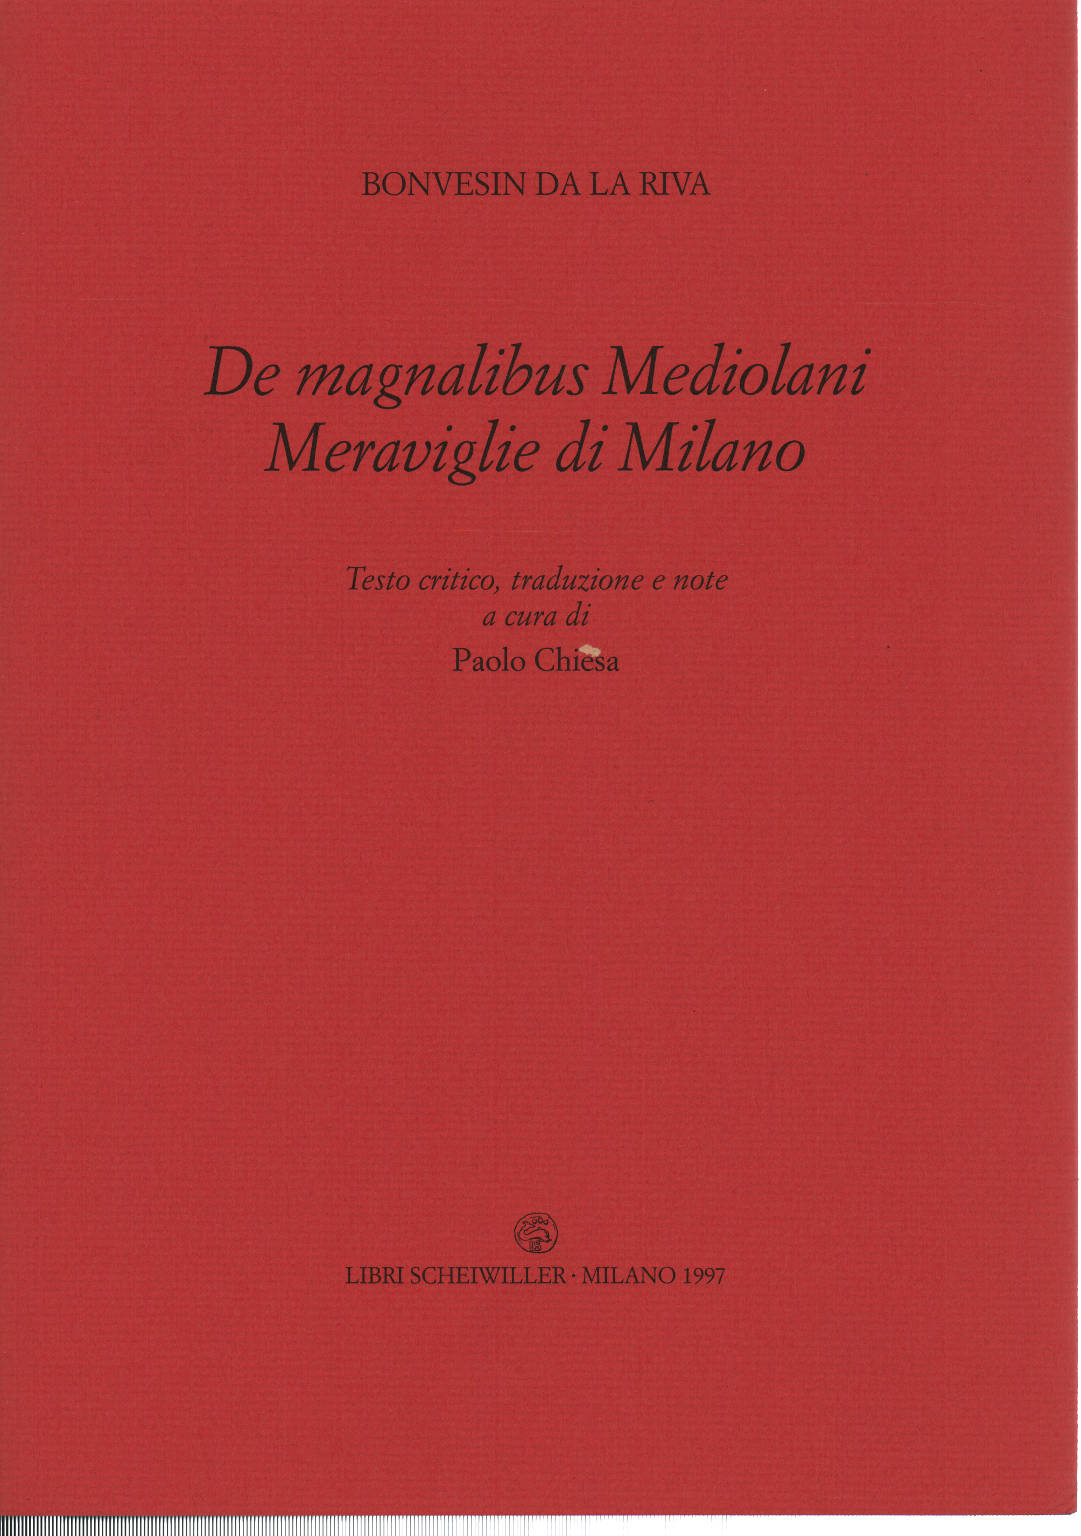 De magnalibus Mediolani Meraviglie di Milano, Bonvesin da la Riva